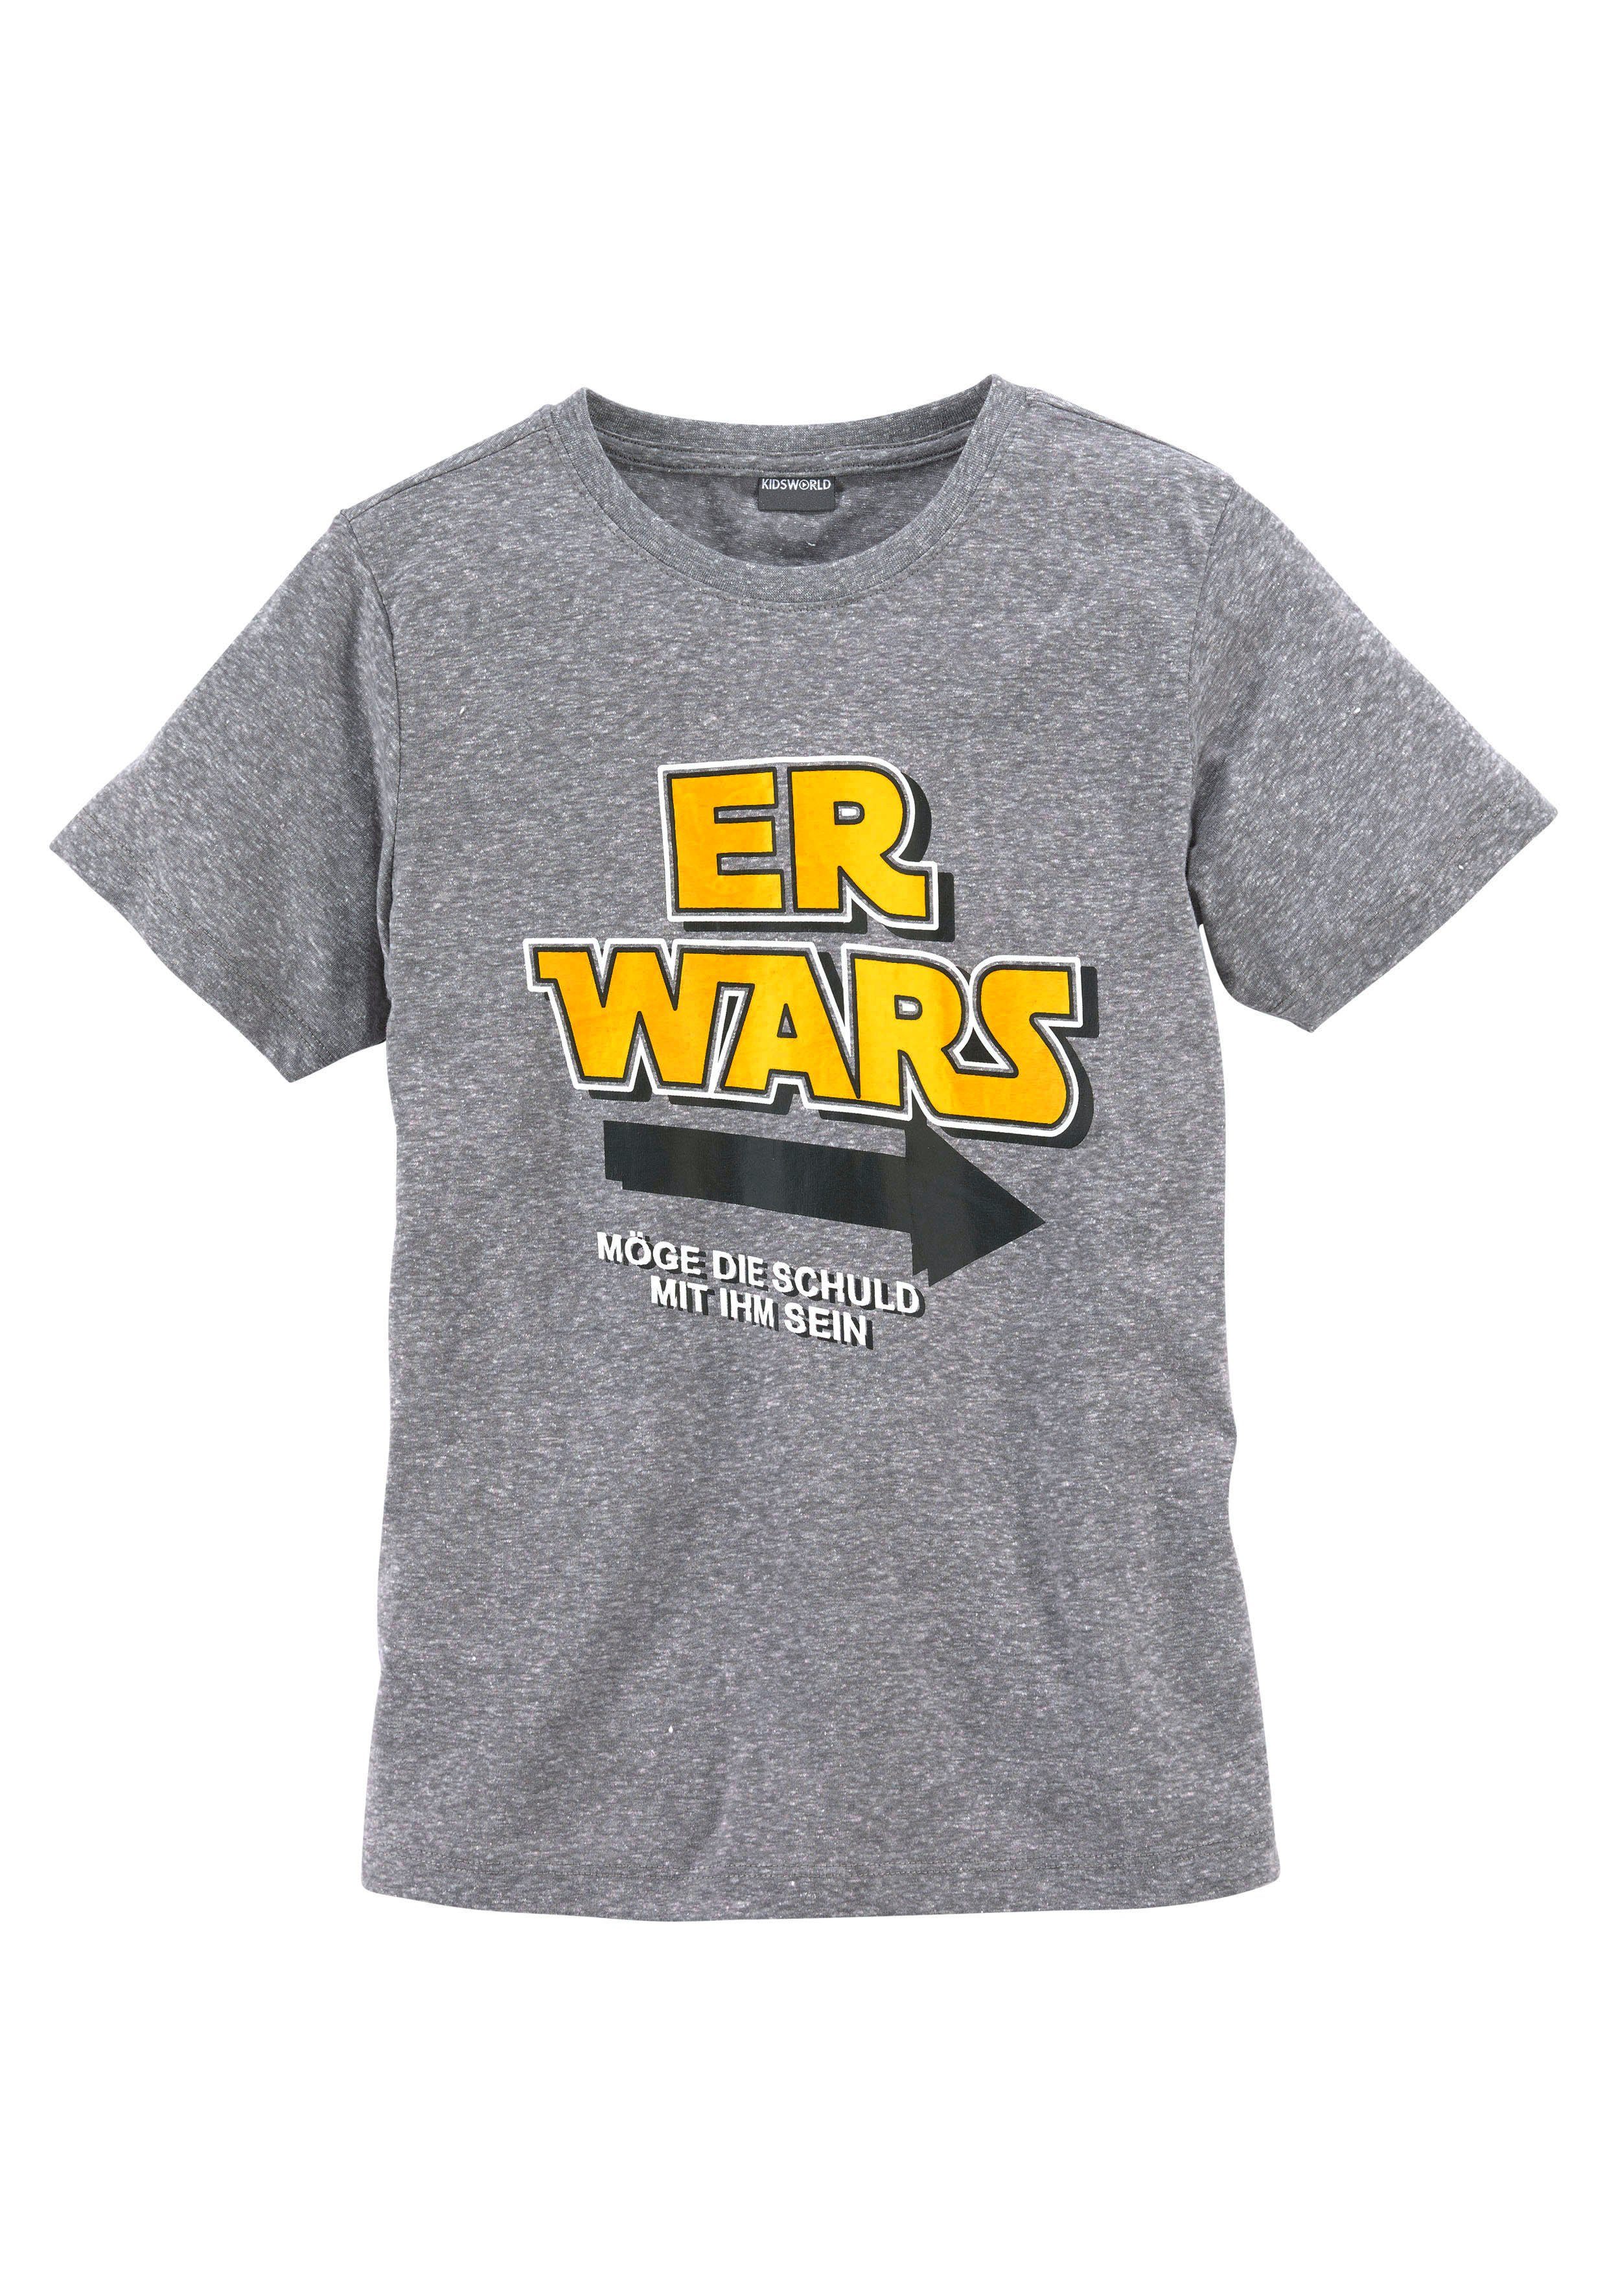 Spruch WARS, ER KIDSWORLD T-Shirt